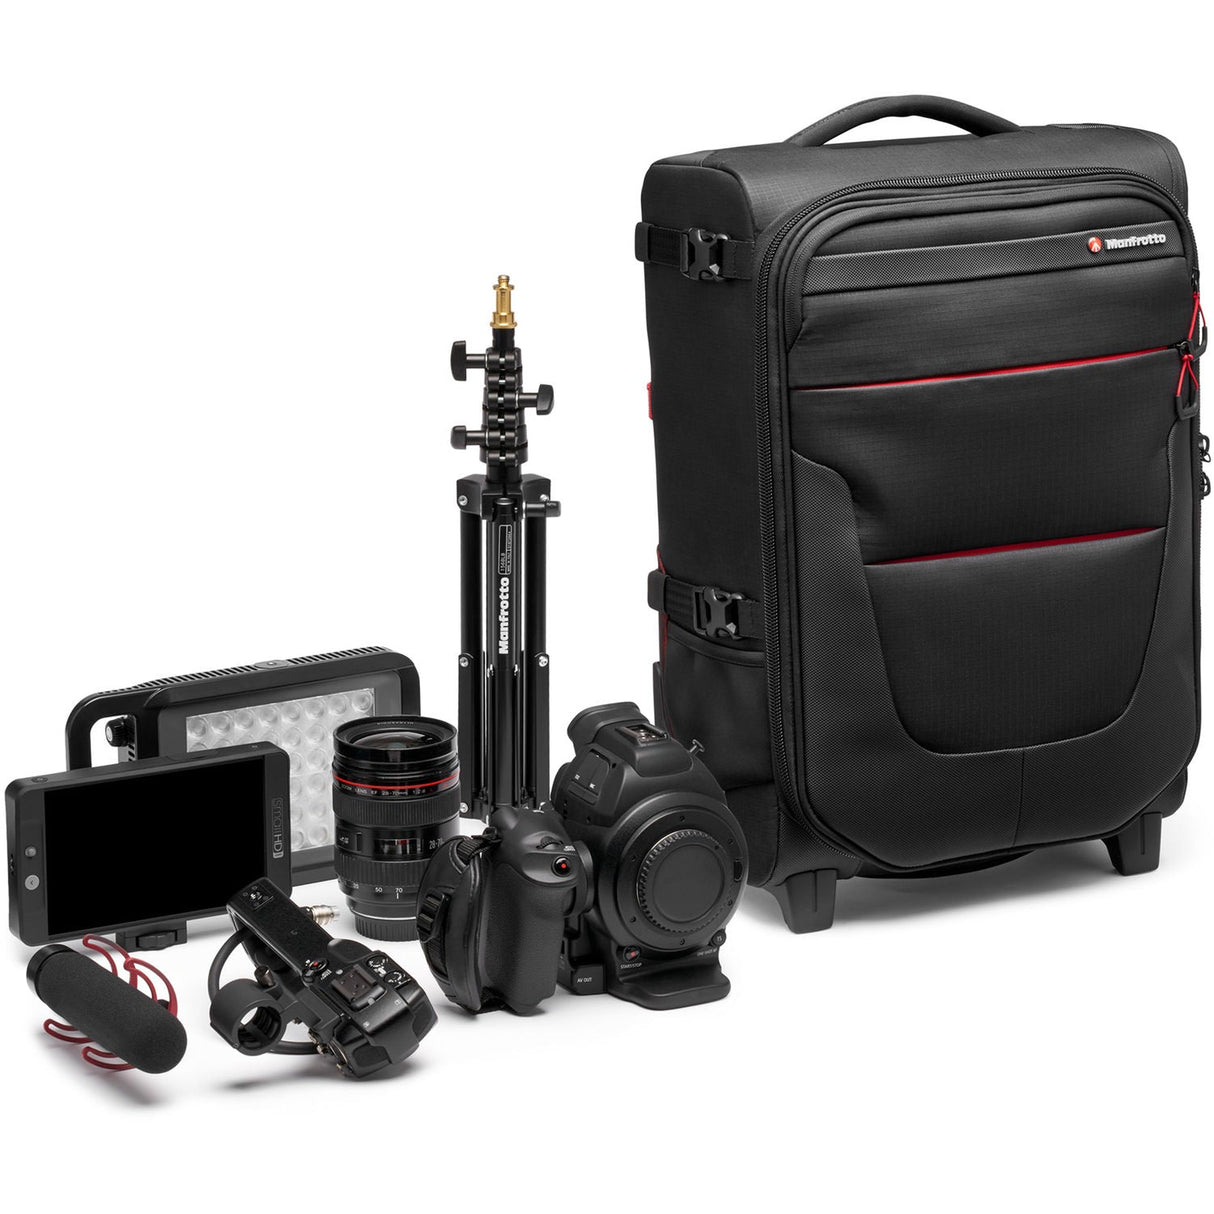 Manfrotto Pro Light Reloader Air-55 Carry-On Camera Roller Bag (Black)